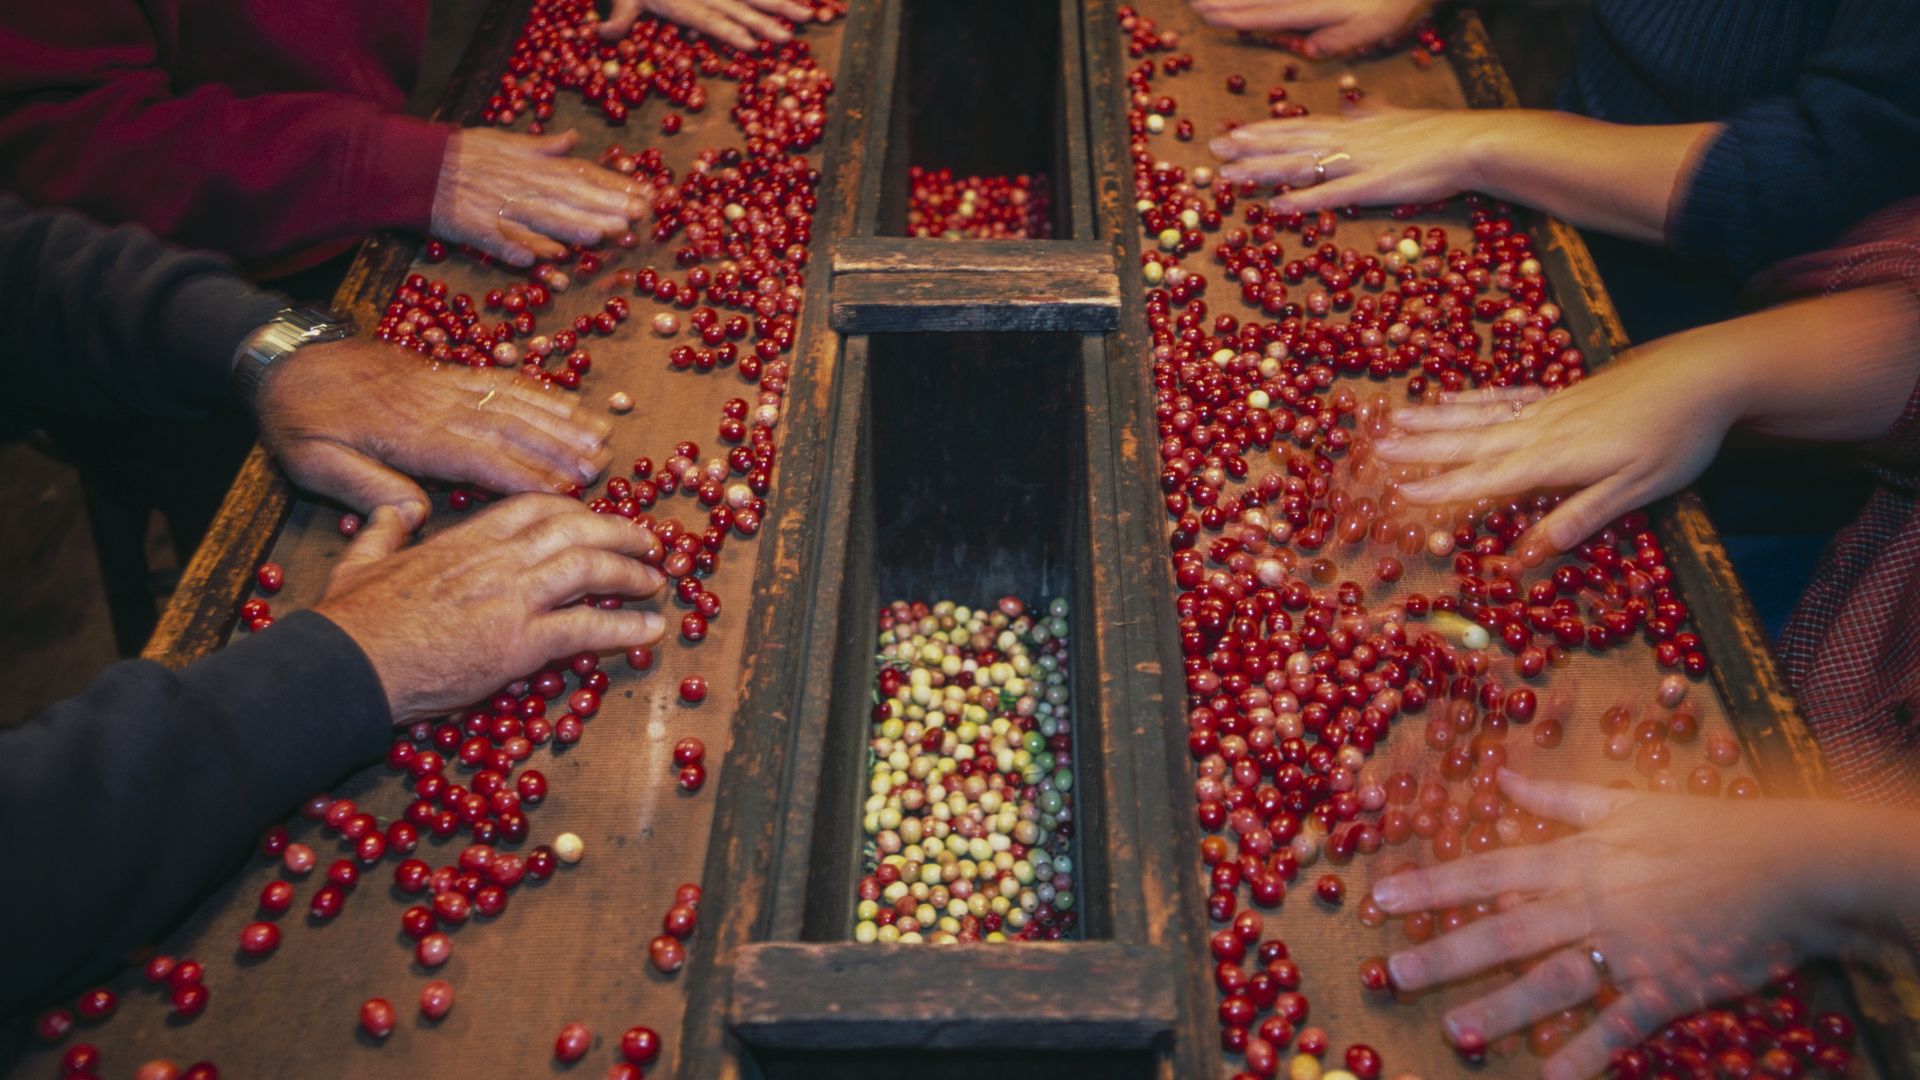 People sorting cranberries